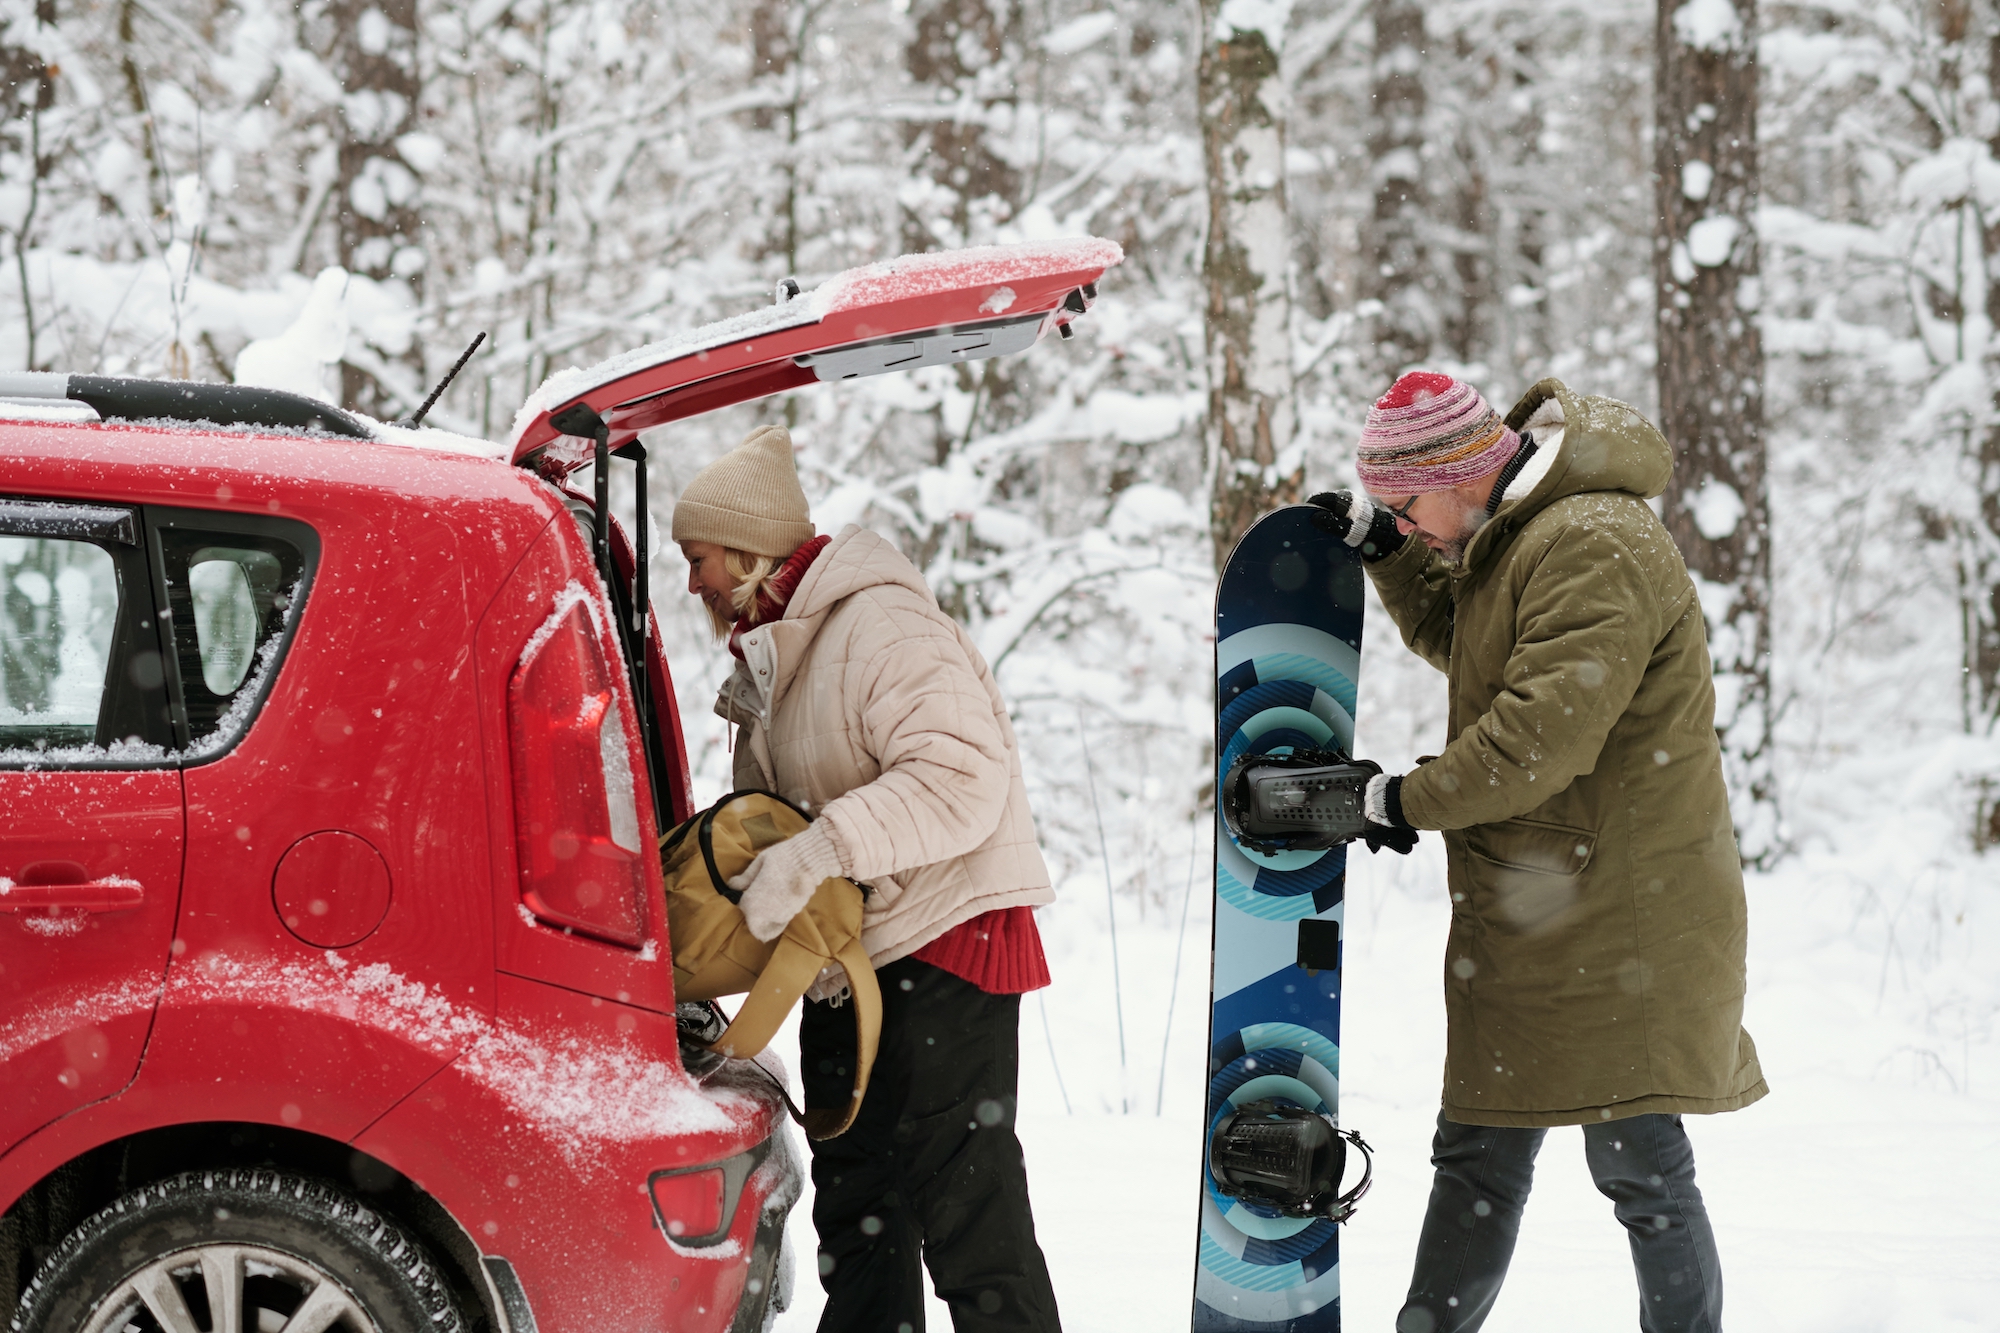 prevážať snowboard alebo lyže v aute nie je bezpečné